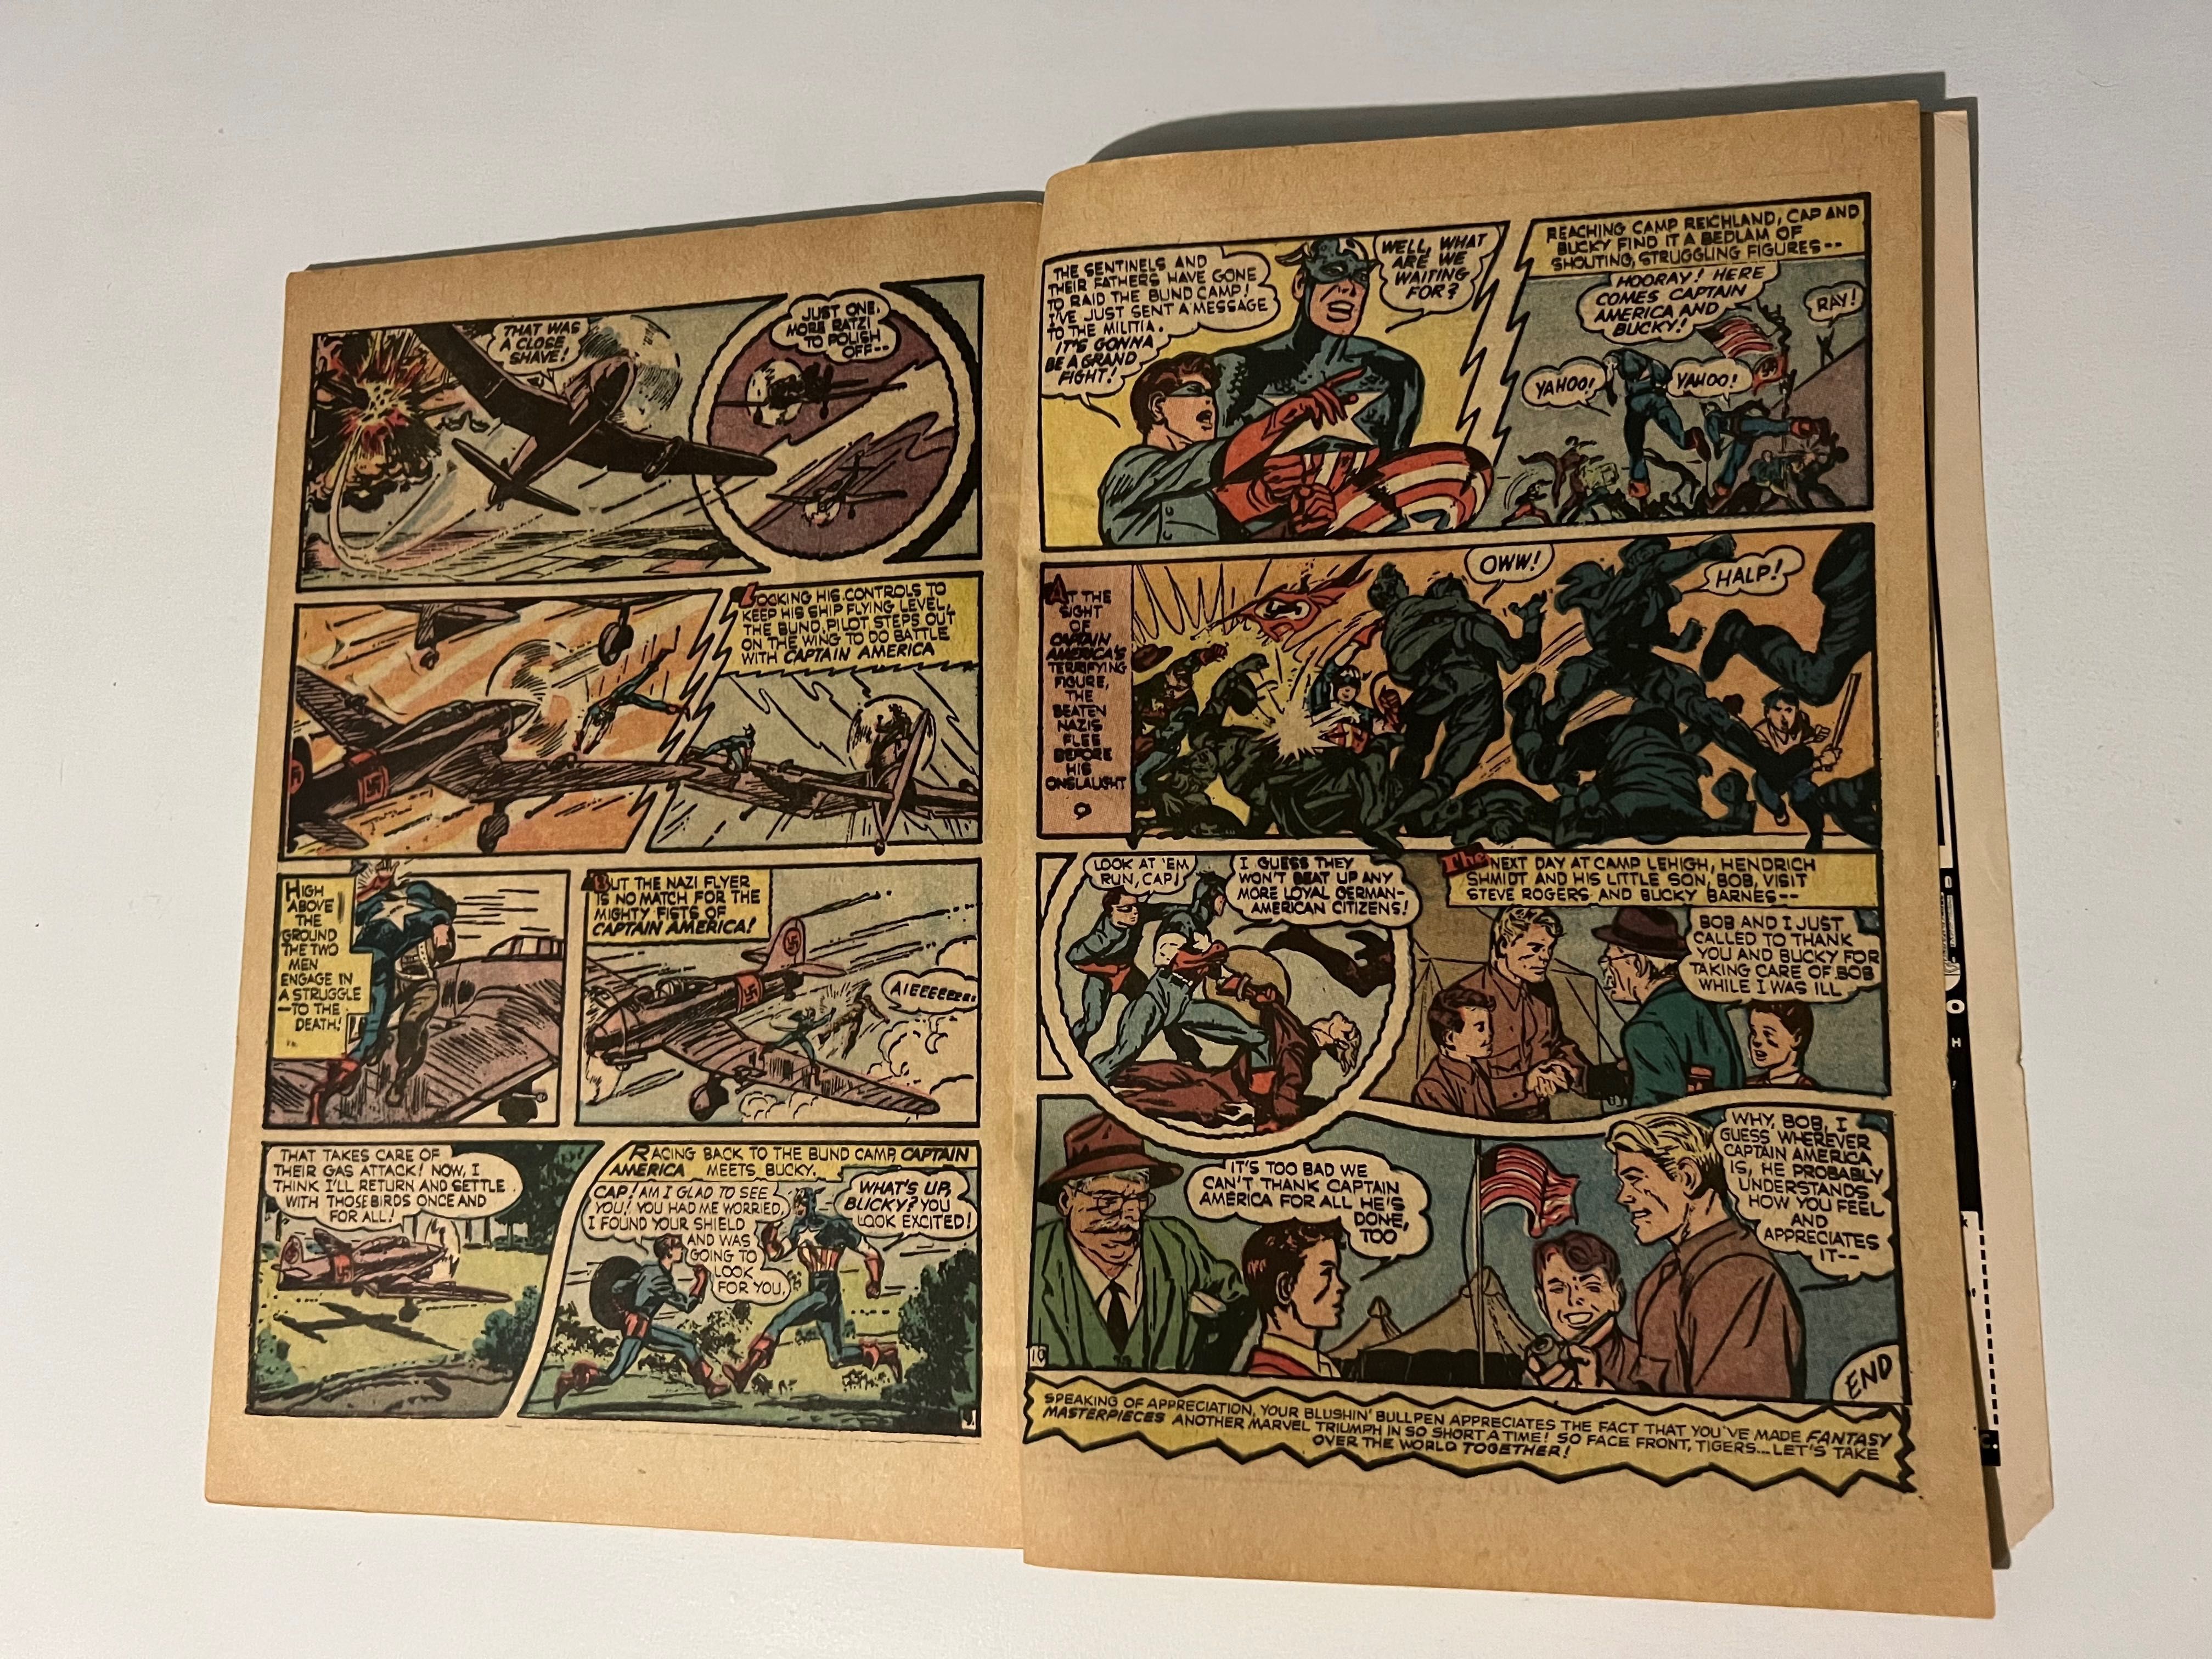 Komiks oryginalny amerykański Fantasy Masterpieces z 1966 roku